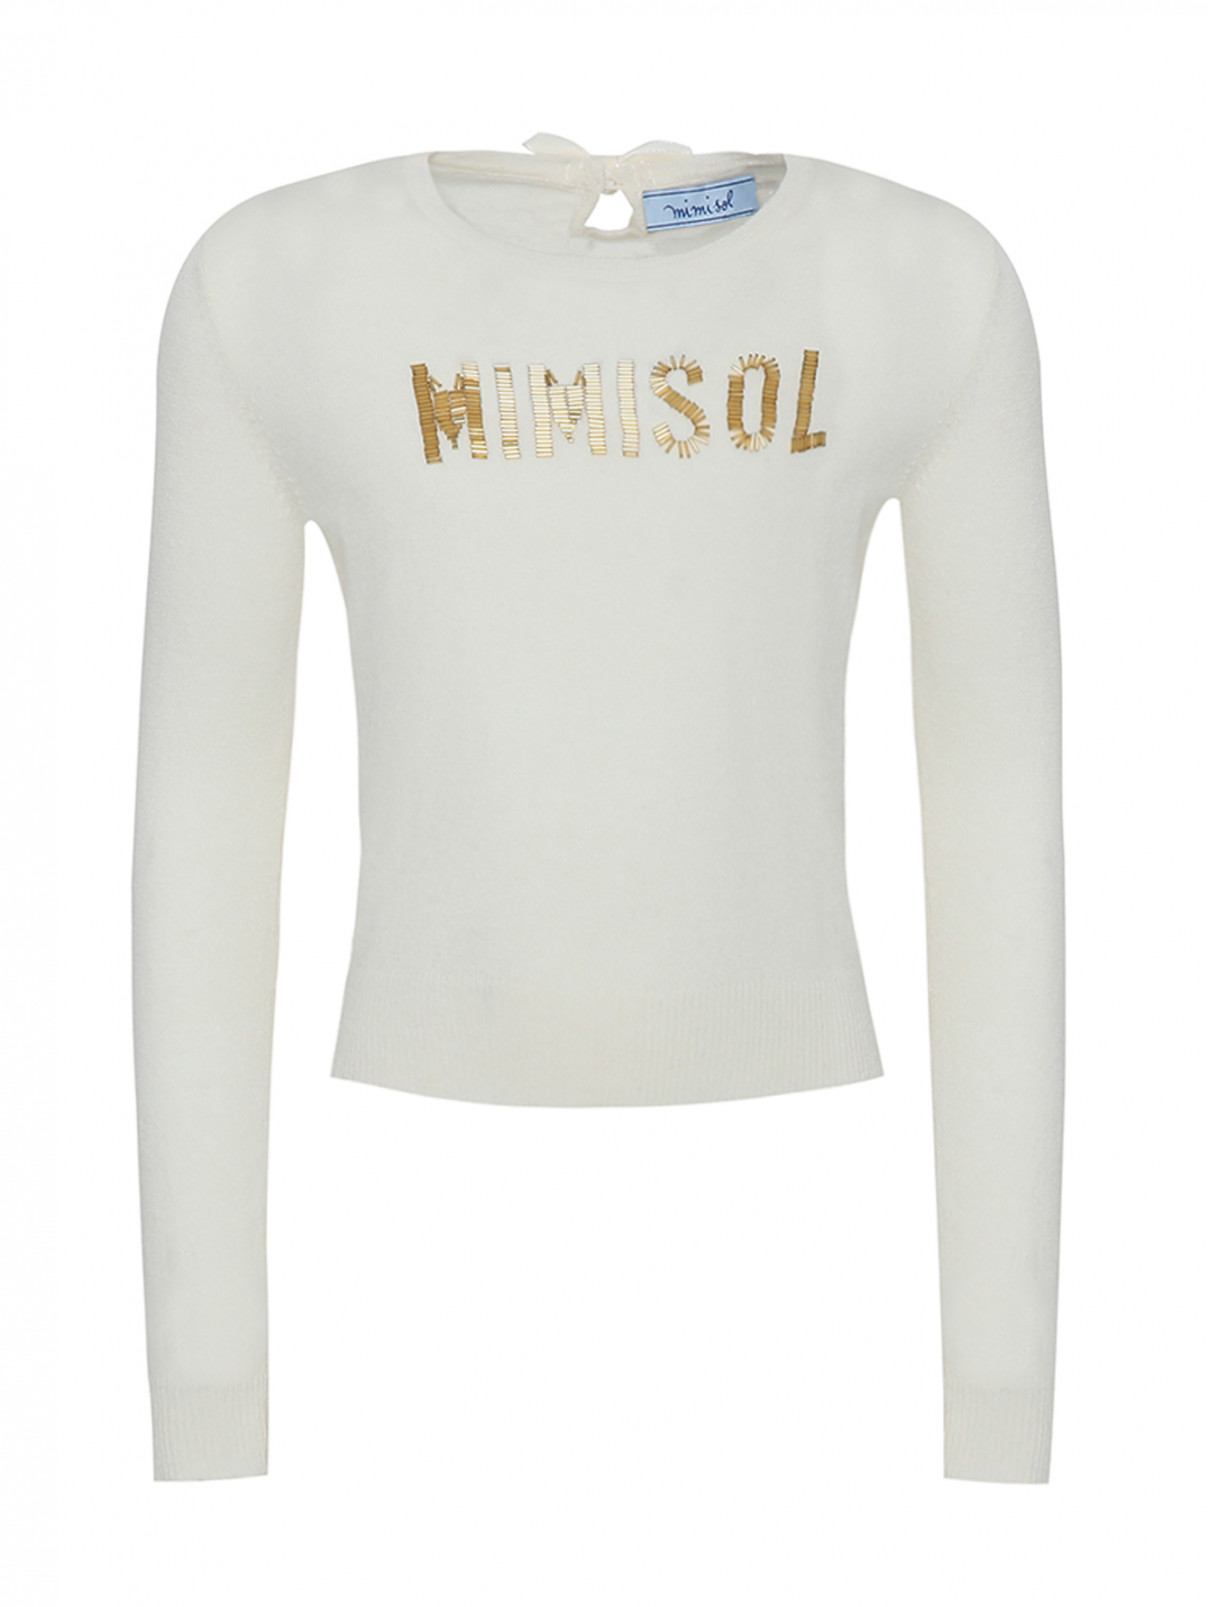 Джемпер трикотажный с вышивкой бисером MiMiSol  –  Общий вид  – Цвет:  Белый